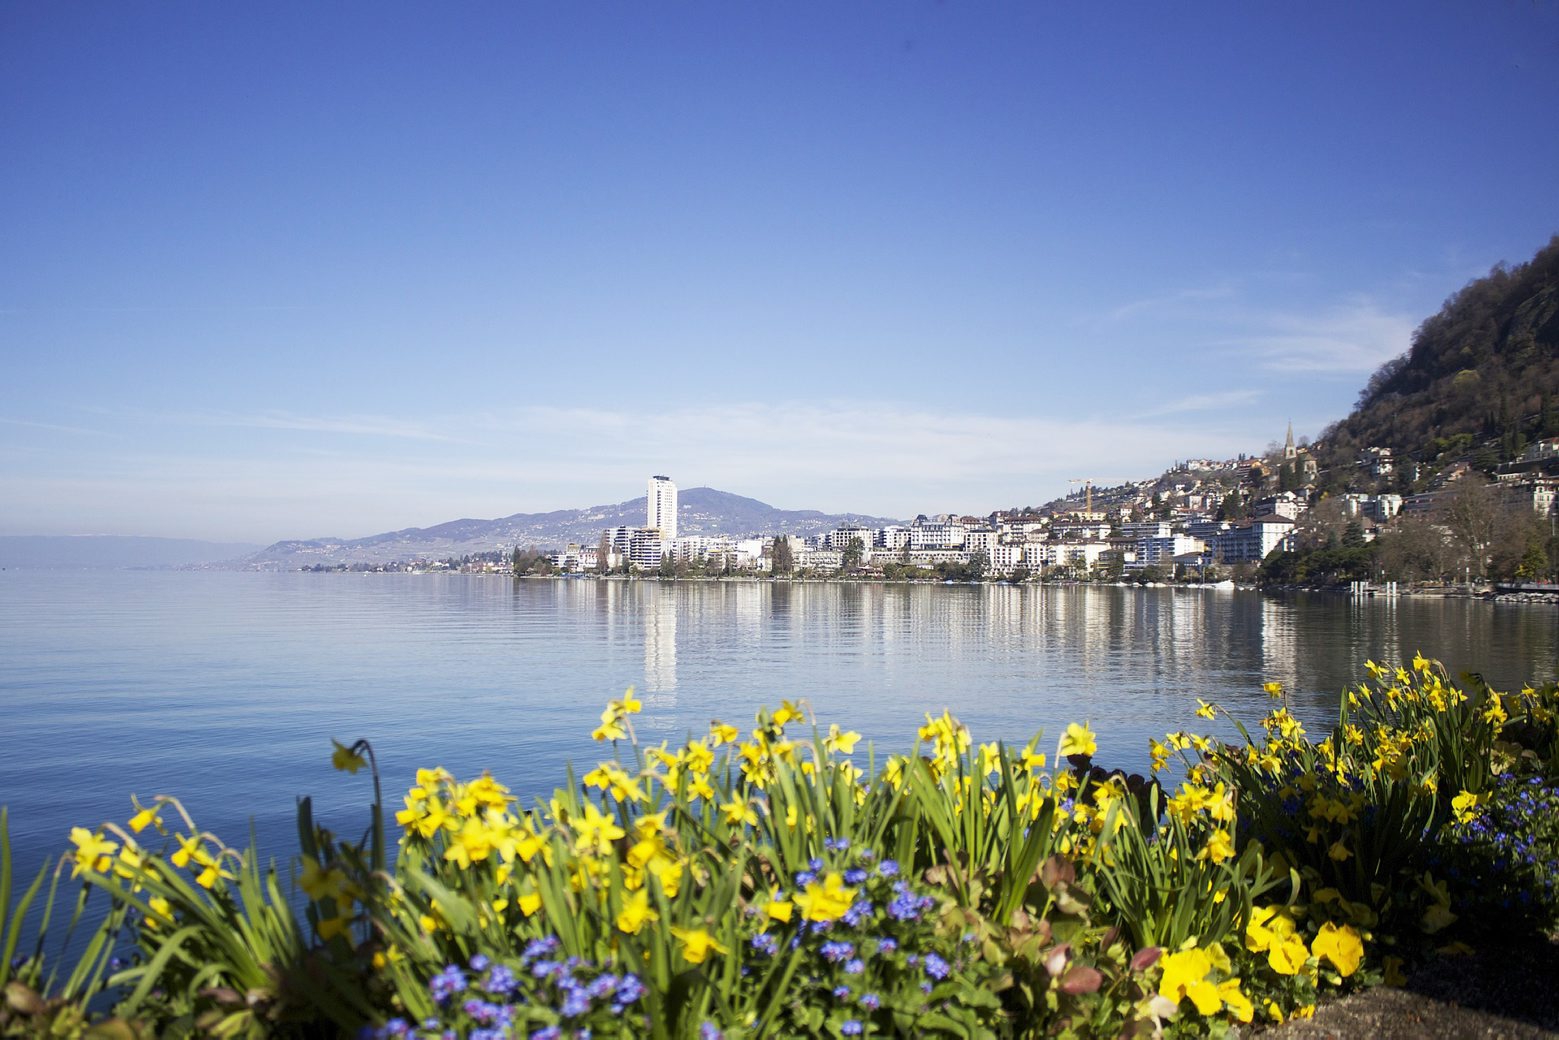 Le refus du centre de congrès a déclenché une avalanche de recours à Montreux.